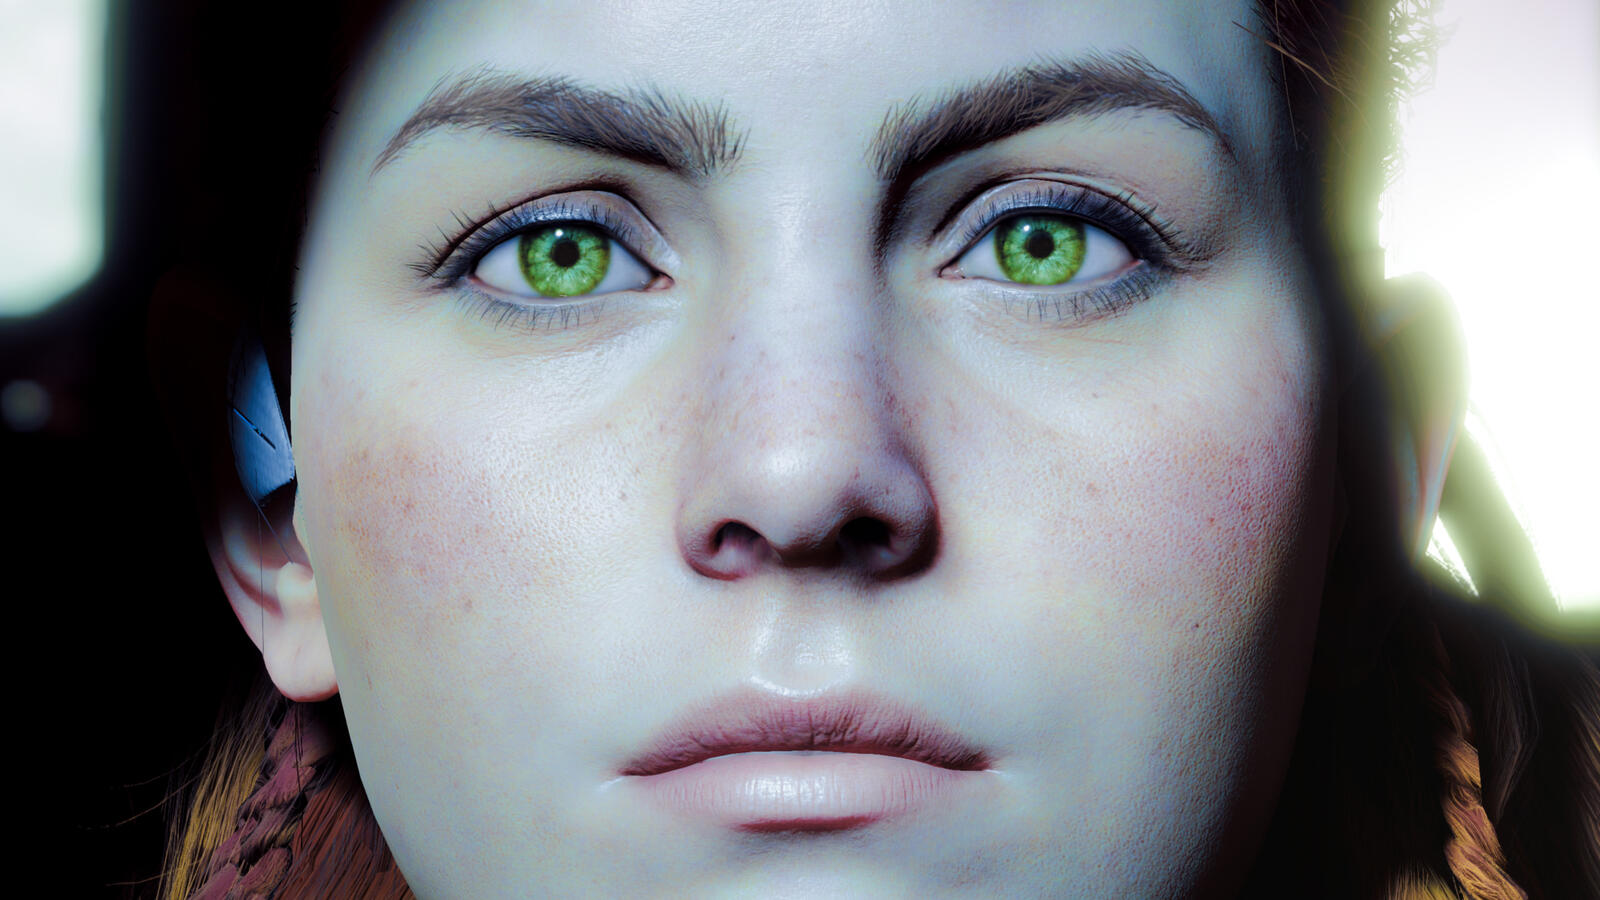 Бесплатное фото Лицо женщины с яркими зелёными глазами